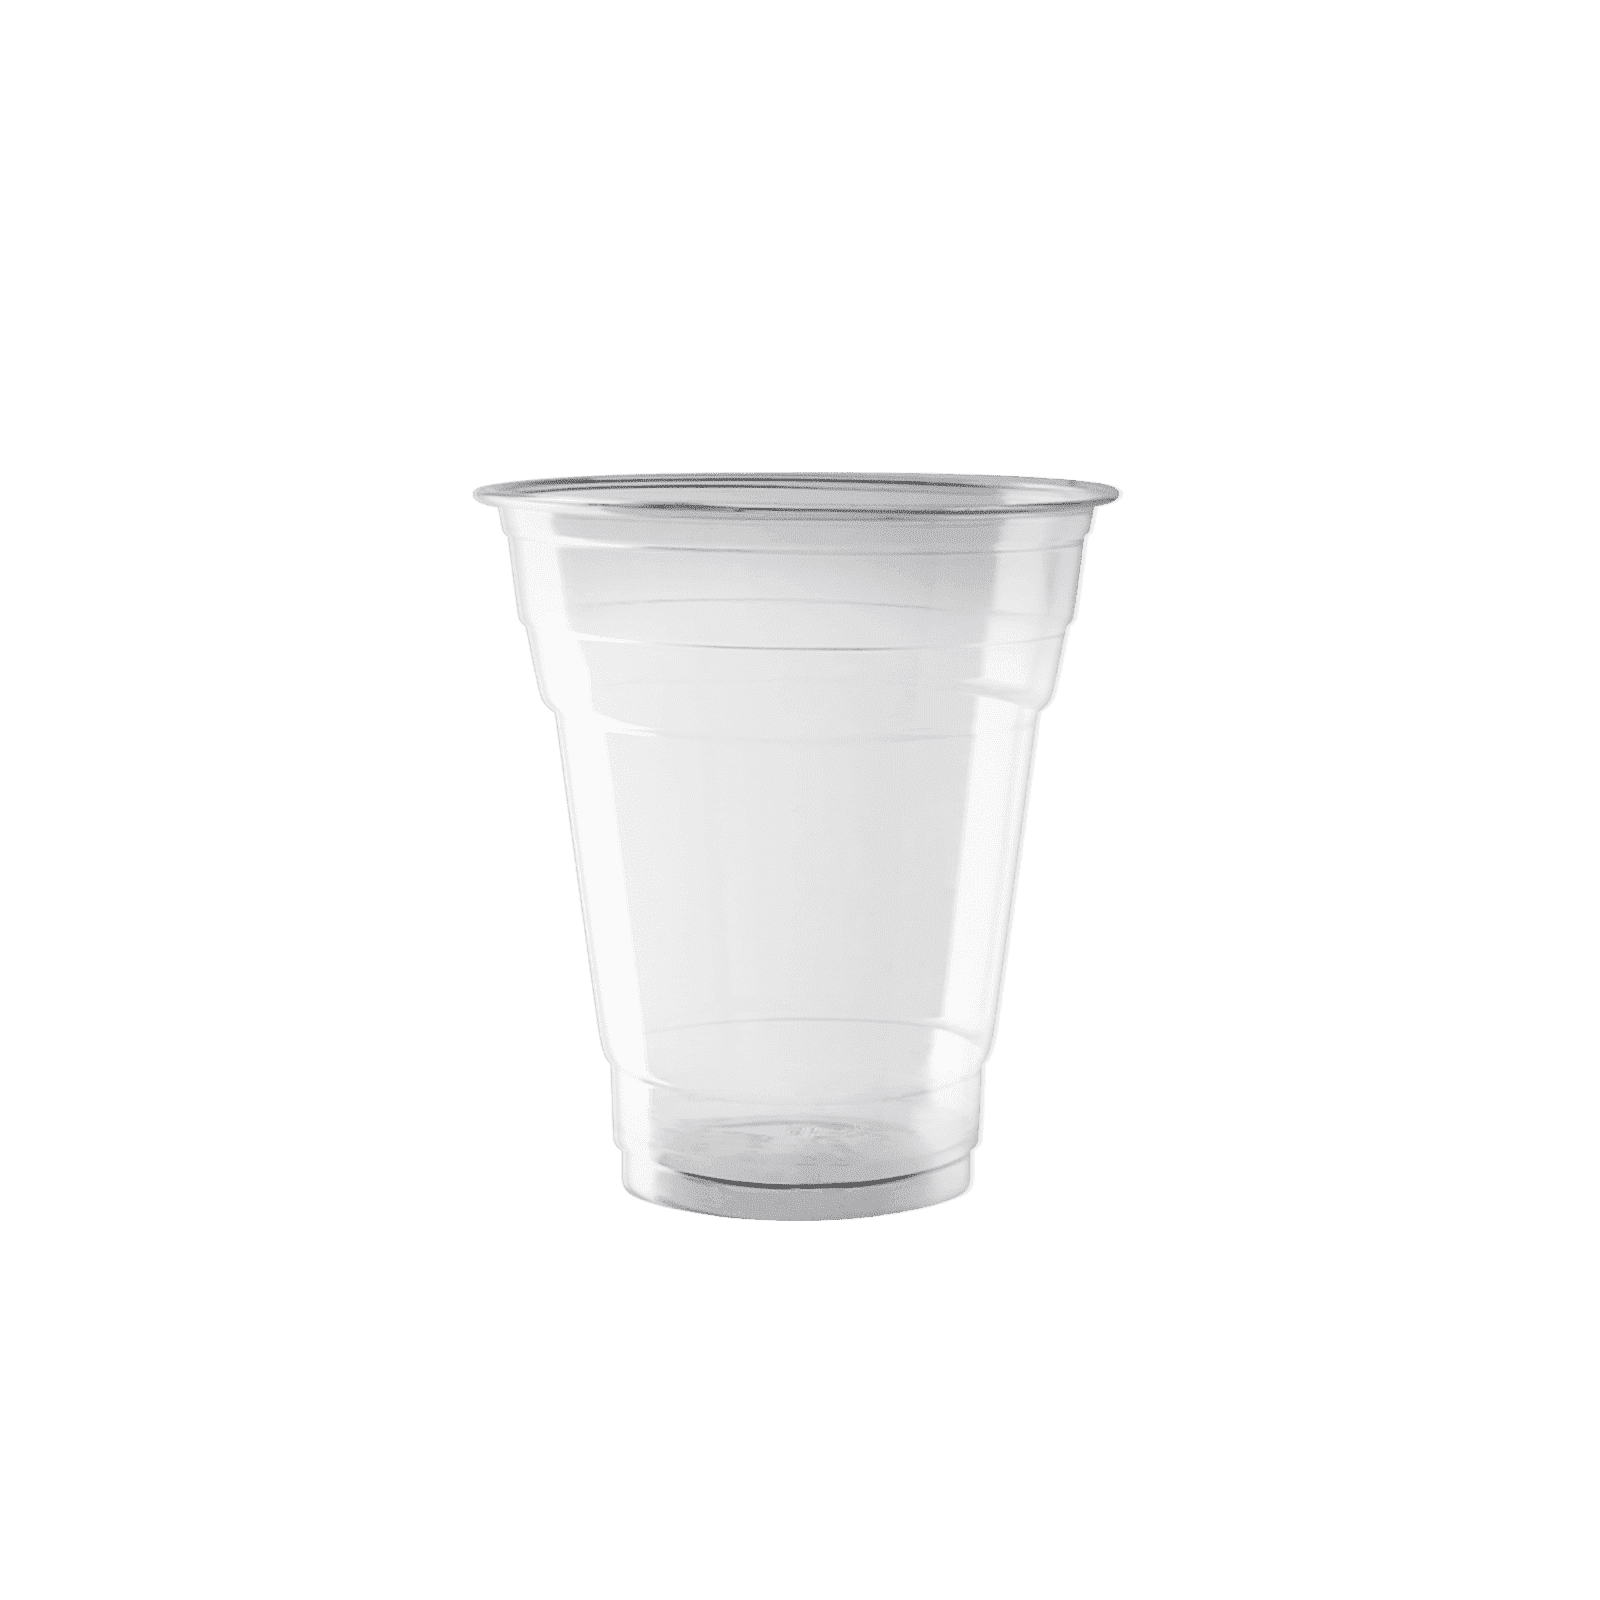 Enpak disposable cold plastic drinking cups with lids 14 oz EPK-PET-14